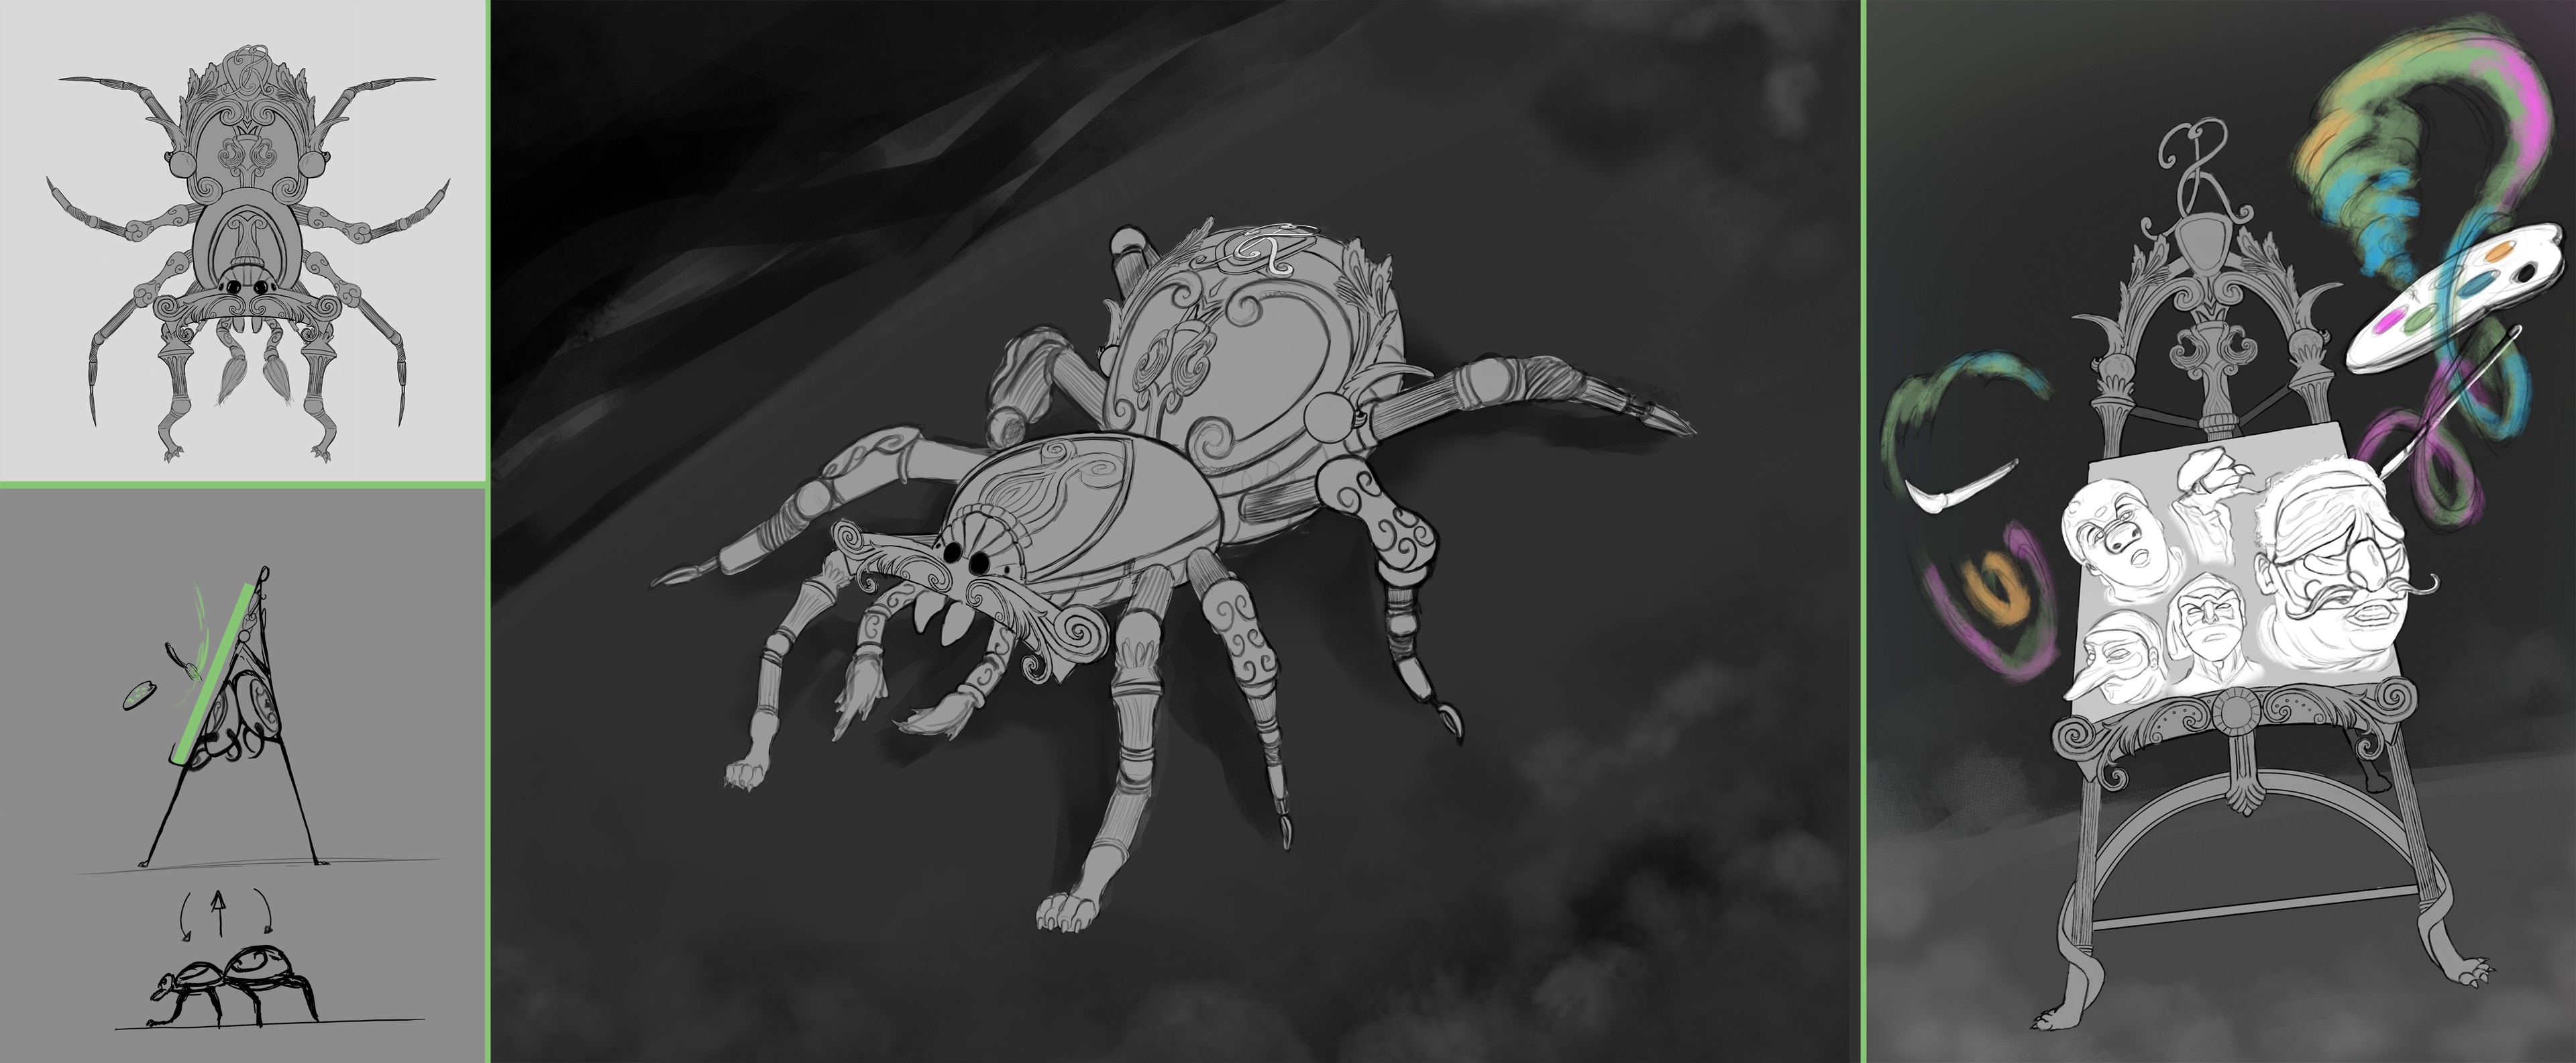 Concept chevalet / araignée par rey